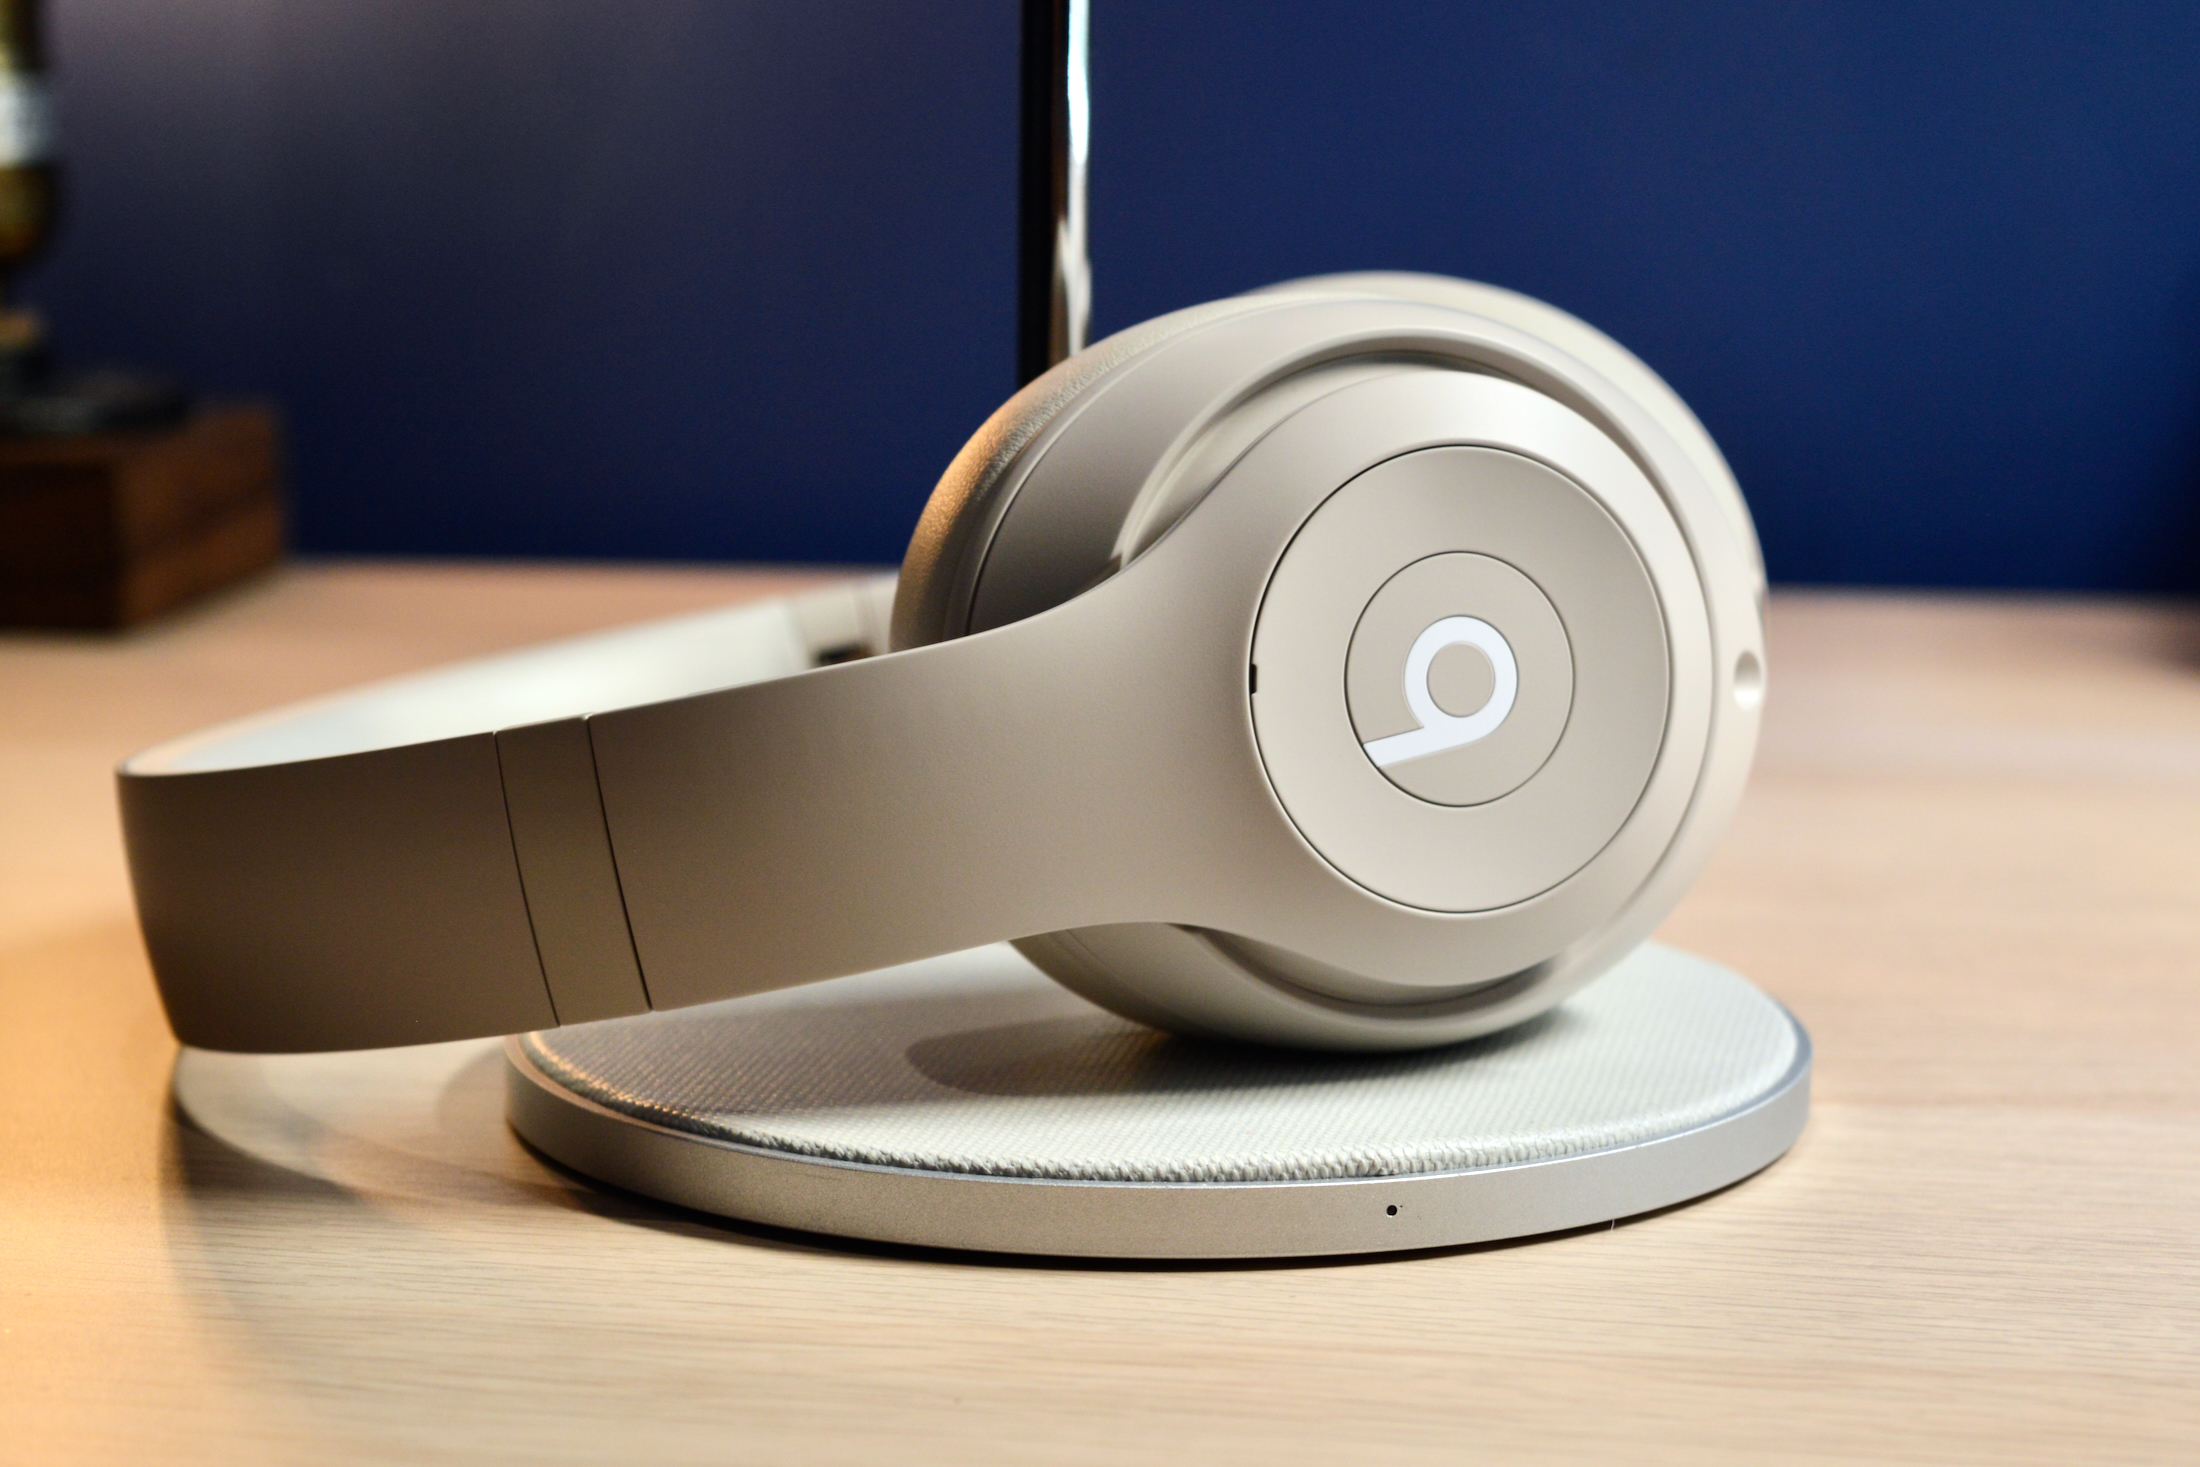 Beats Studio Pro Headphones: Our Honest Review - CNET